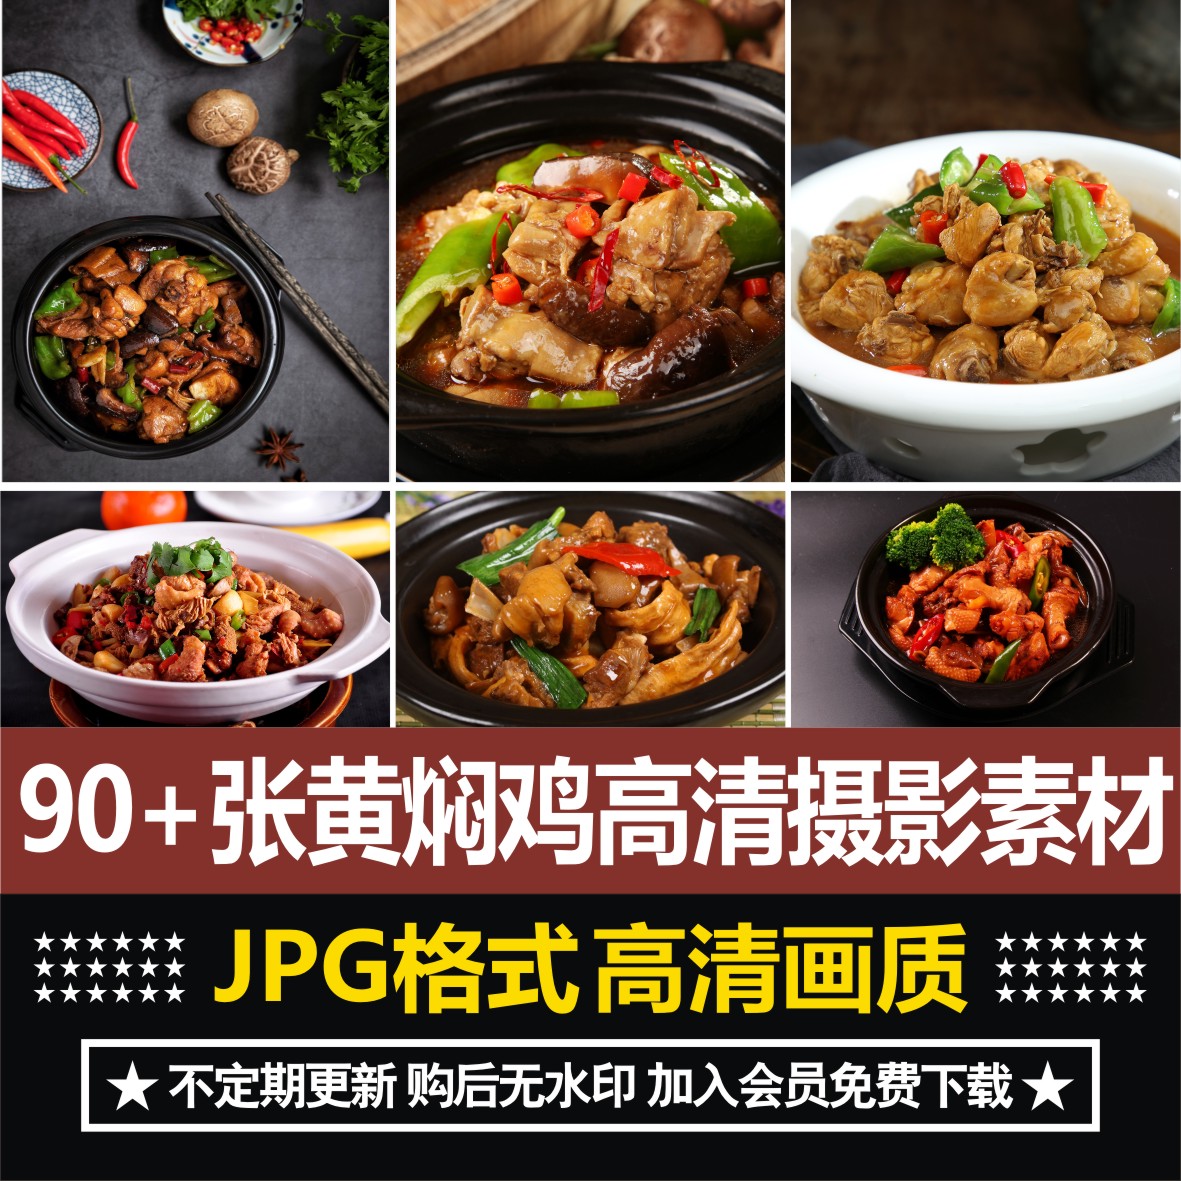 黄焖鸡咖喱鸡米饭套餐外卖菜品图片高清美食海报菜单图片素材